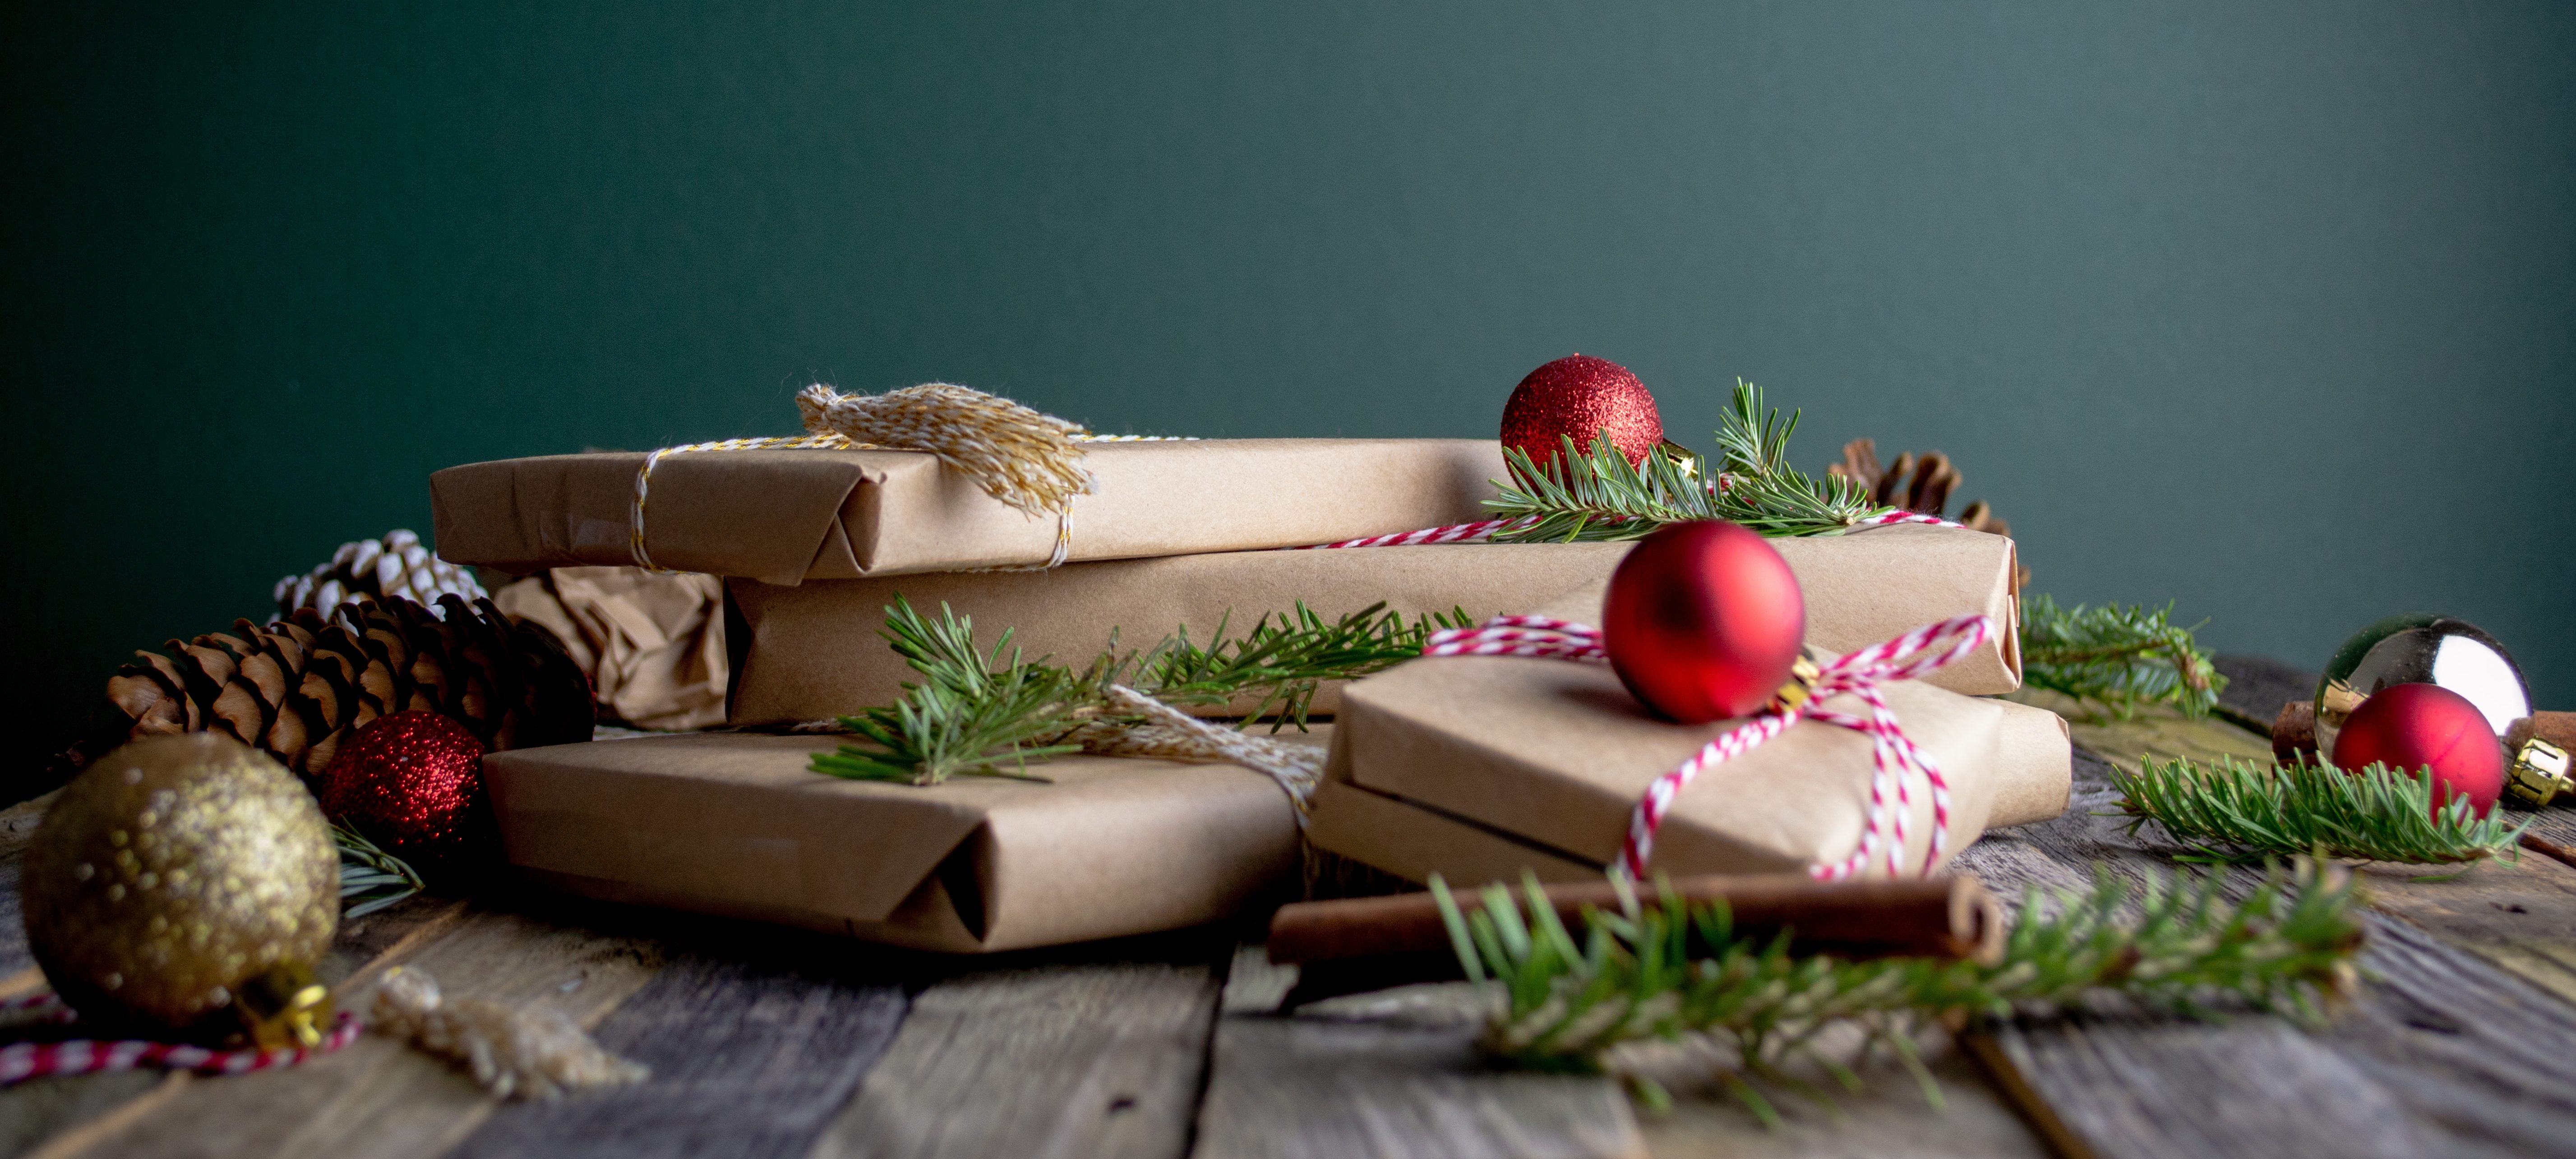 Papier cadeau Noël recyclable, ecologique et eco-responsable